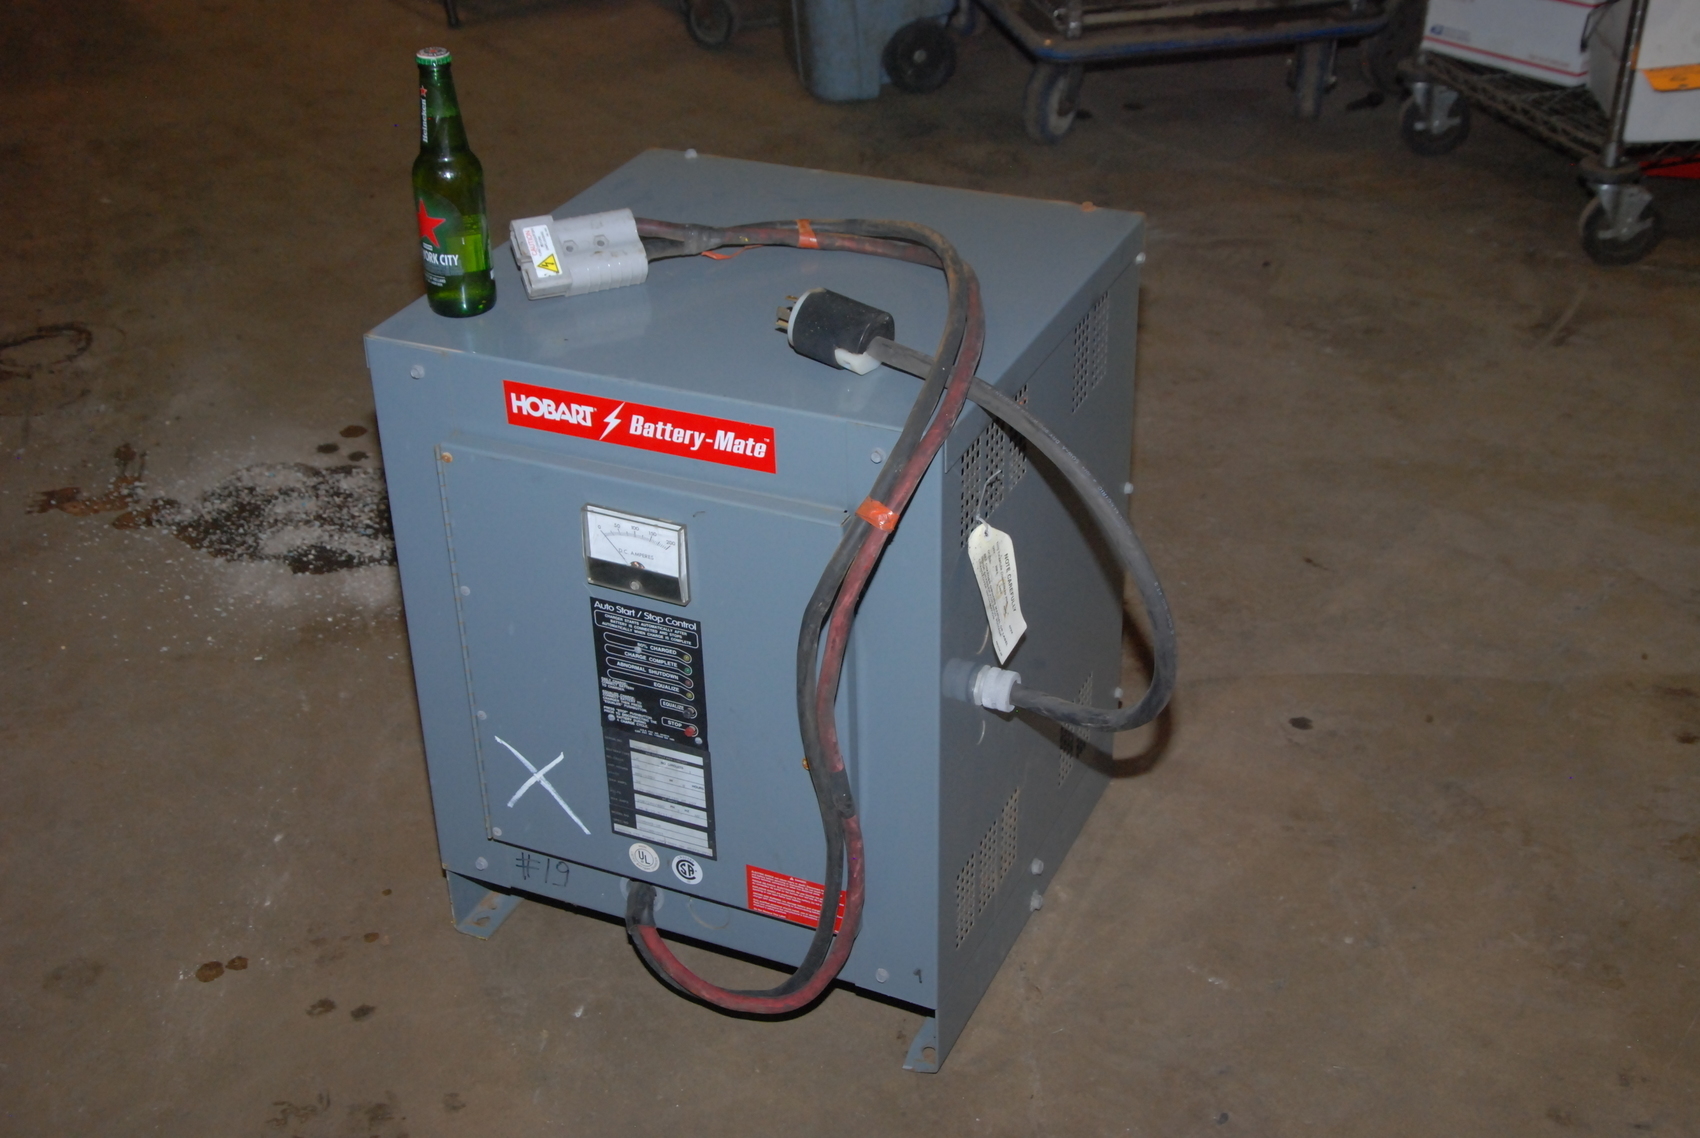 Hobart Battery-Mate 1050H3-18 Forklift battery charger,36V;18 cells